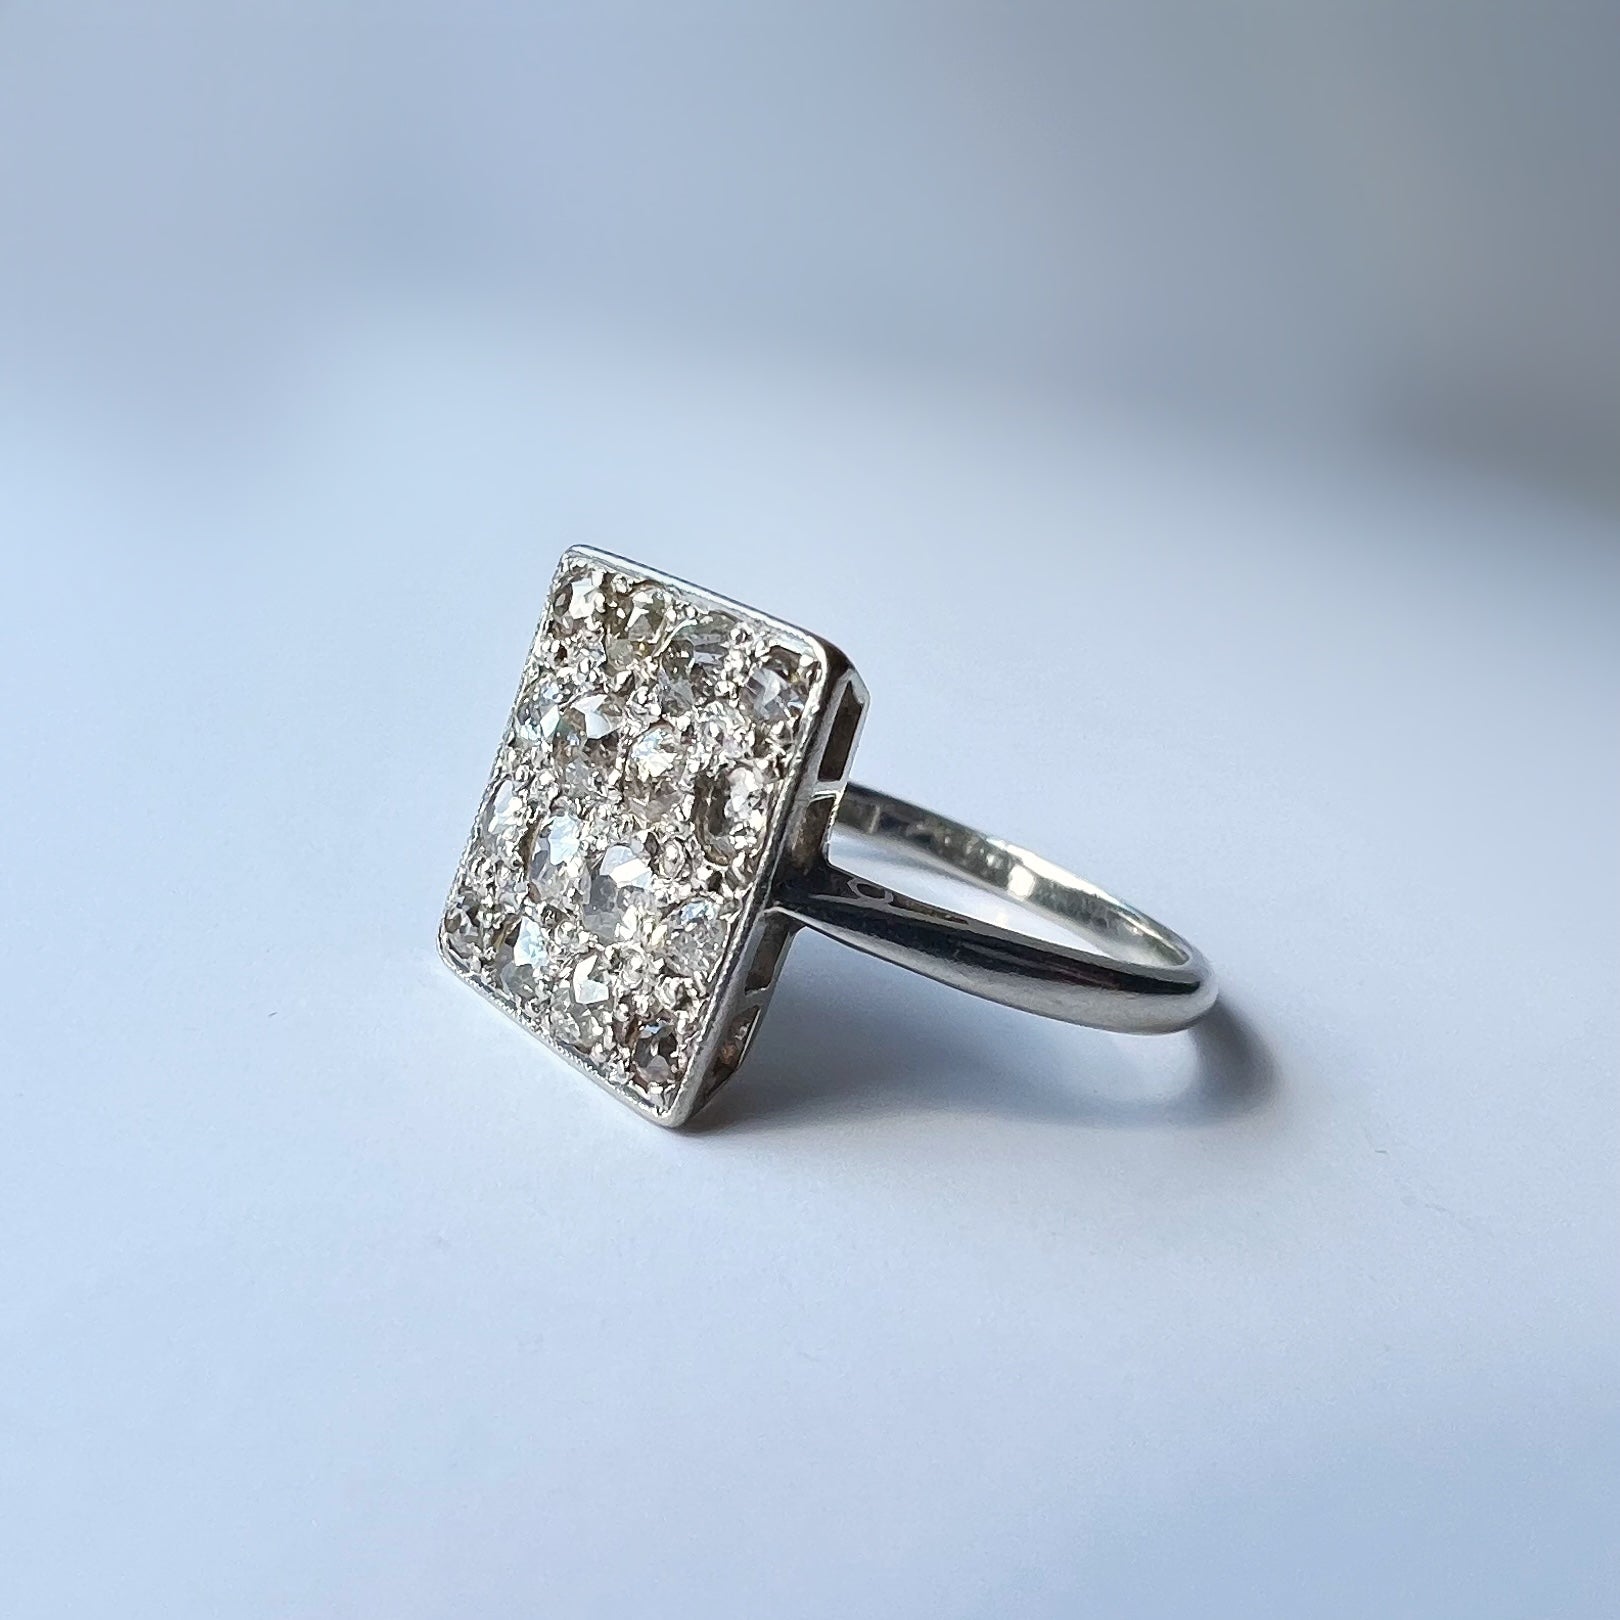 Buy Shimmering Square Diamond Ring Online | ORRA